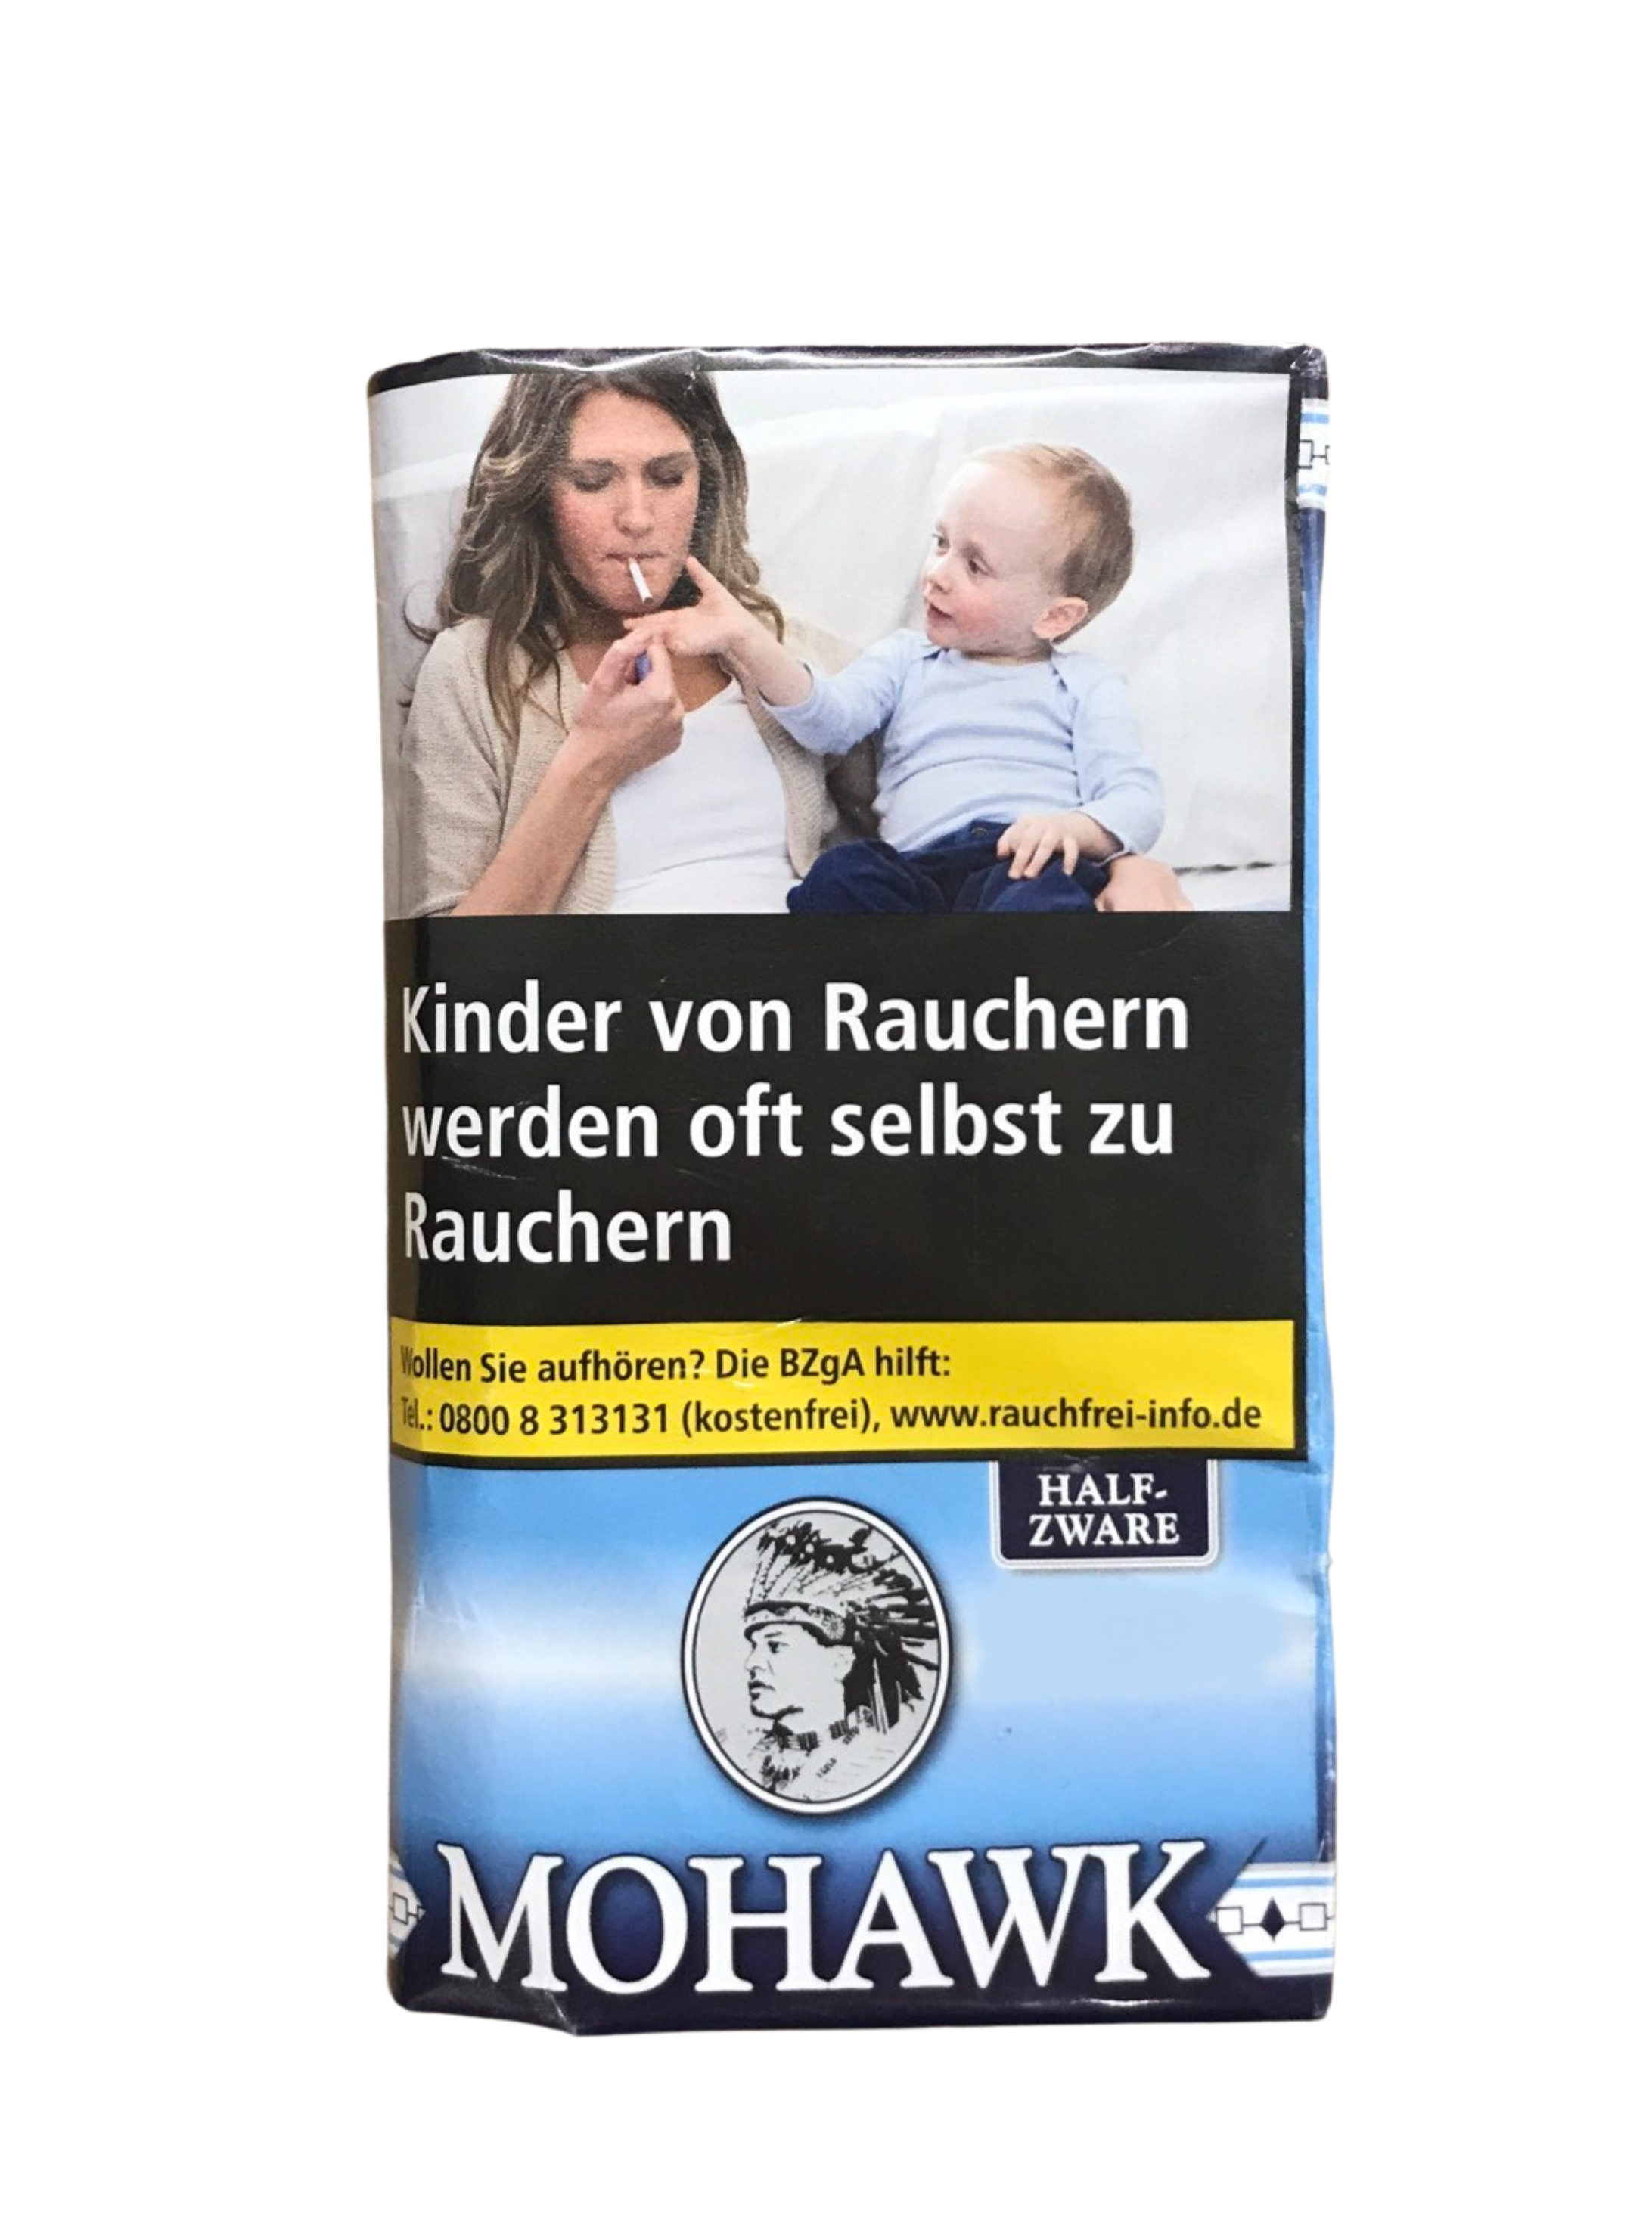 MOHAWK Halfzware (10)